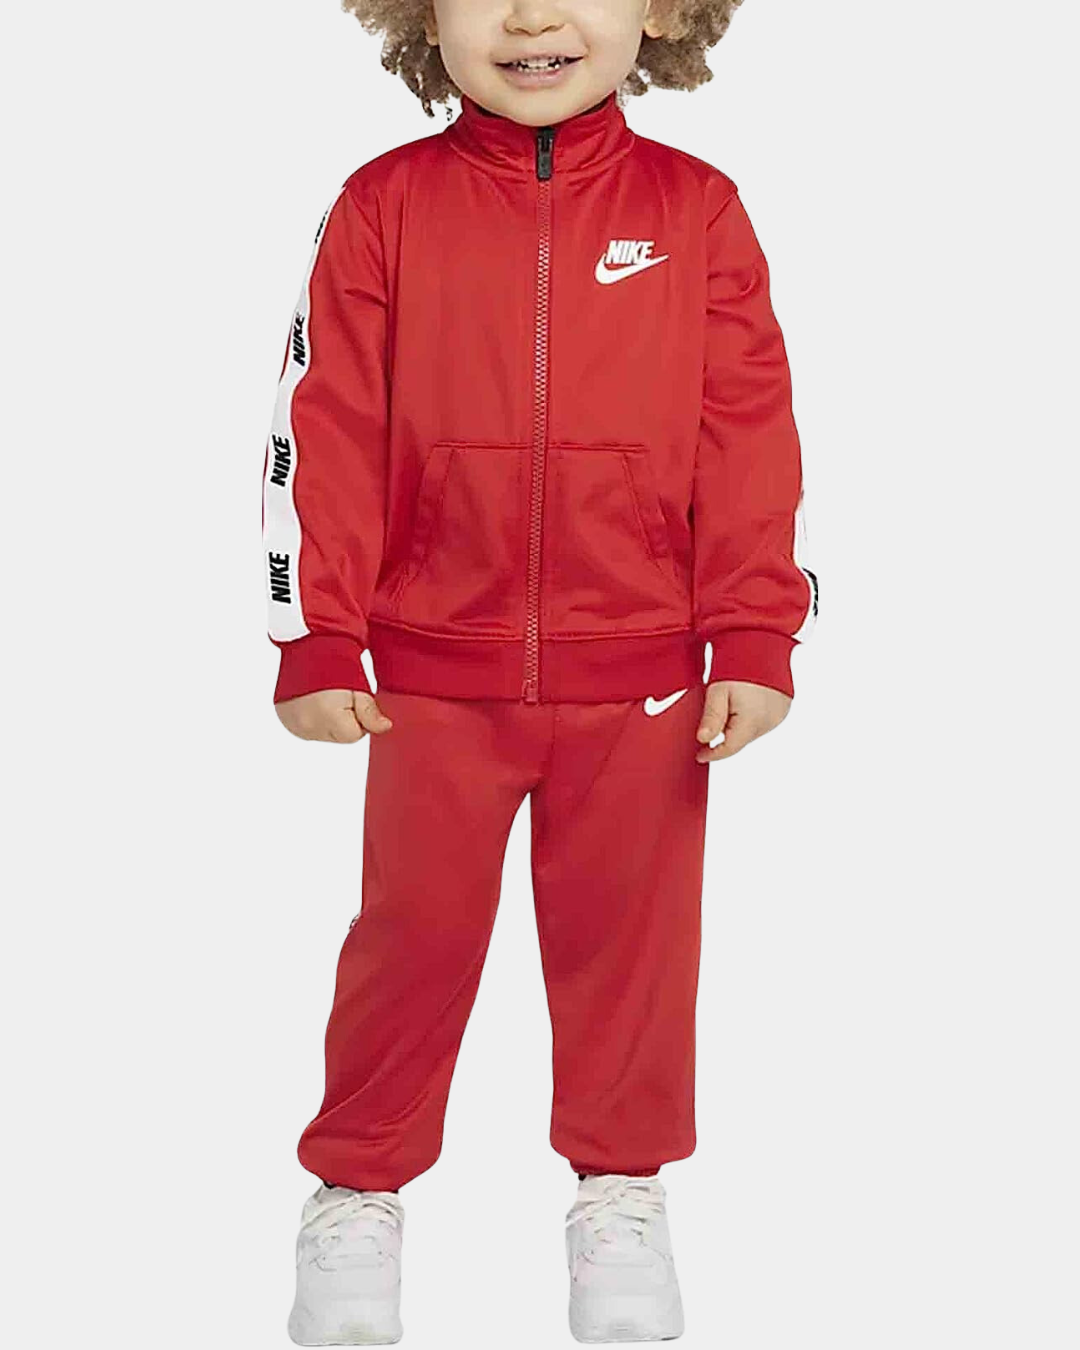 Survêtement Nike Sportswear Bébé - Rouge/Blanc